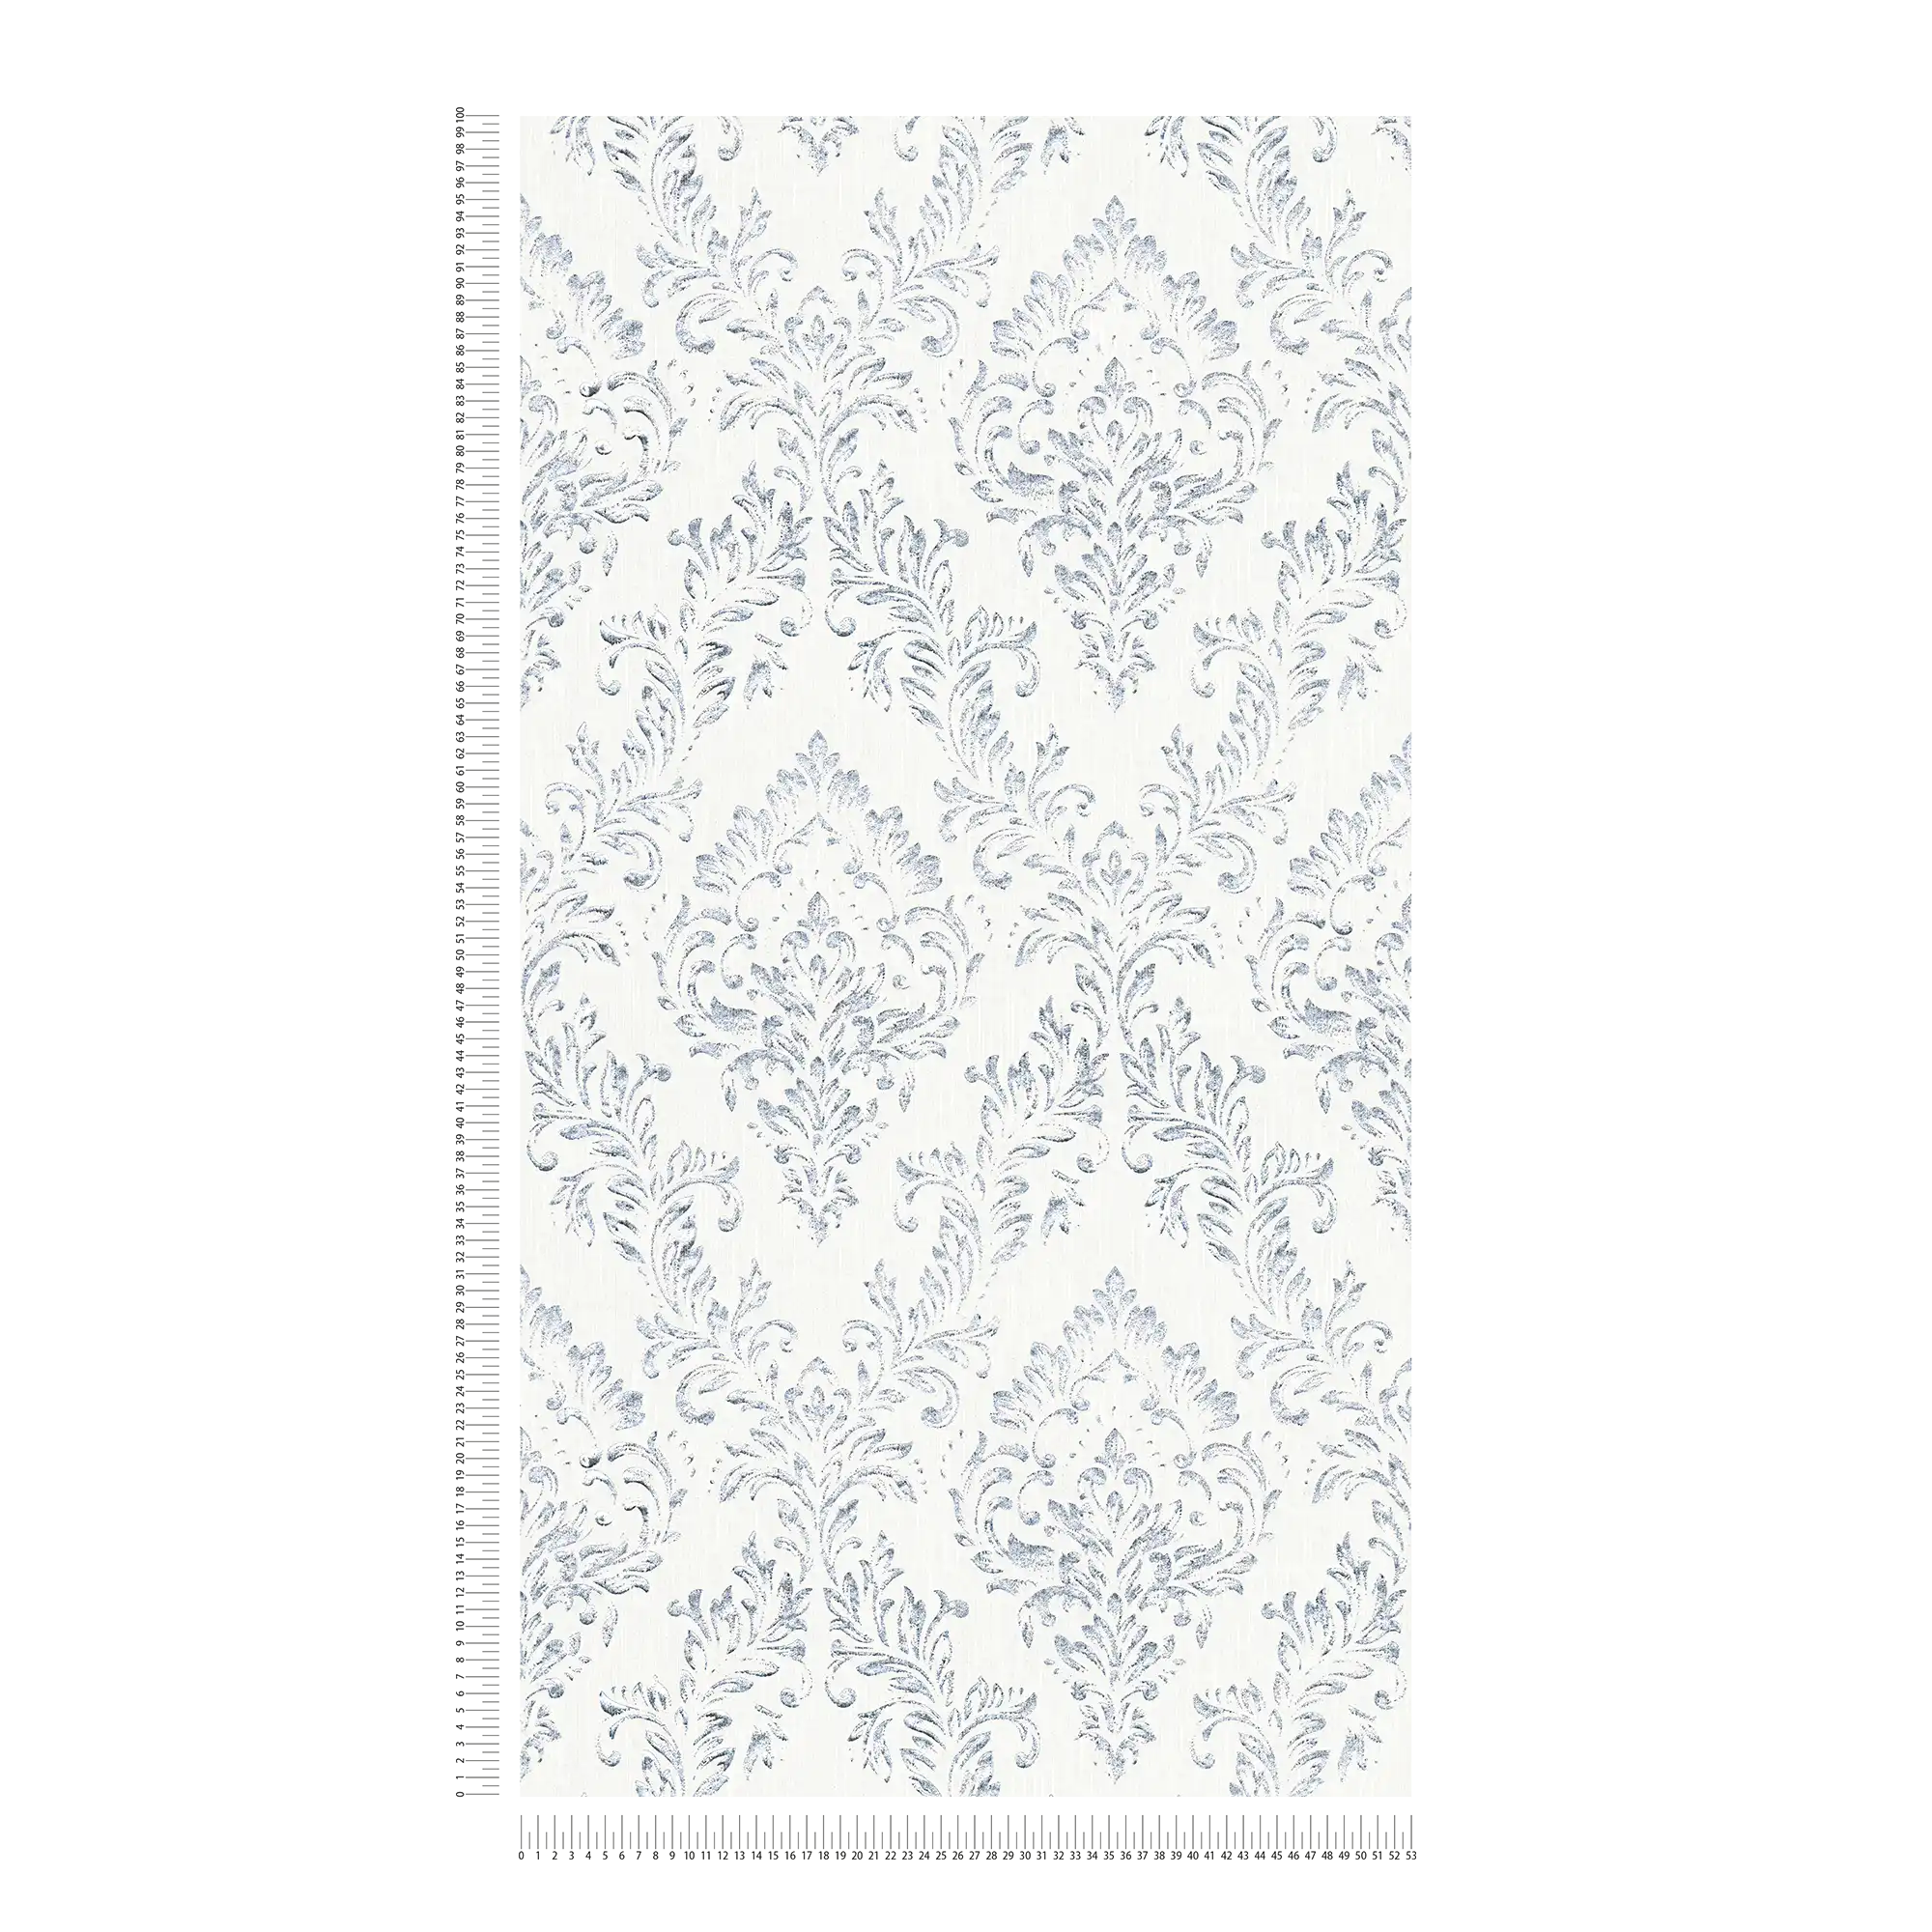             Carta da parati ornamentale a motivi floreali con effetto glitter - argento, bianco
        